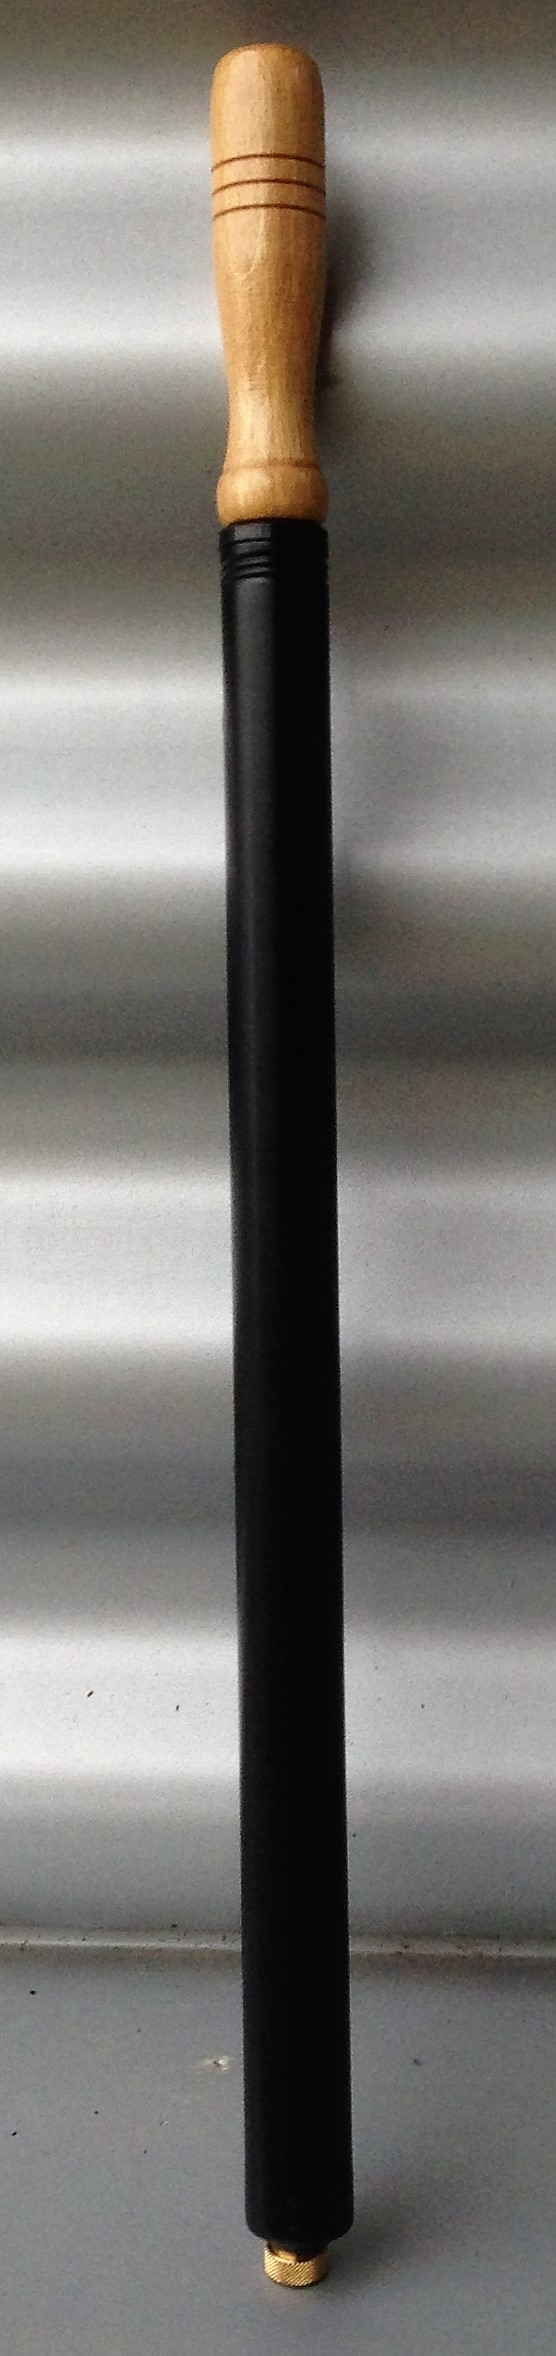 Pompa di gonfiaggio, nero, metallo, impugnatura in legno